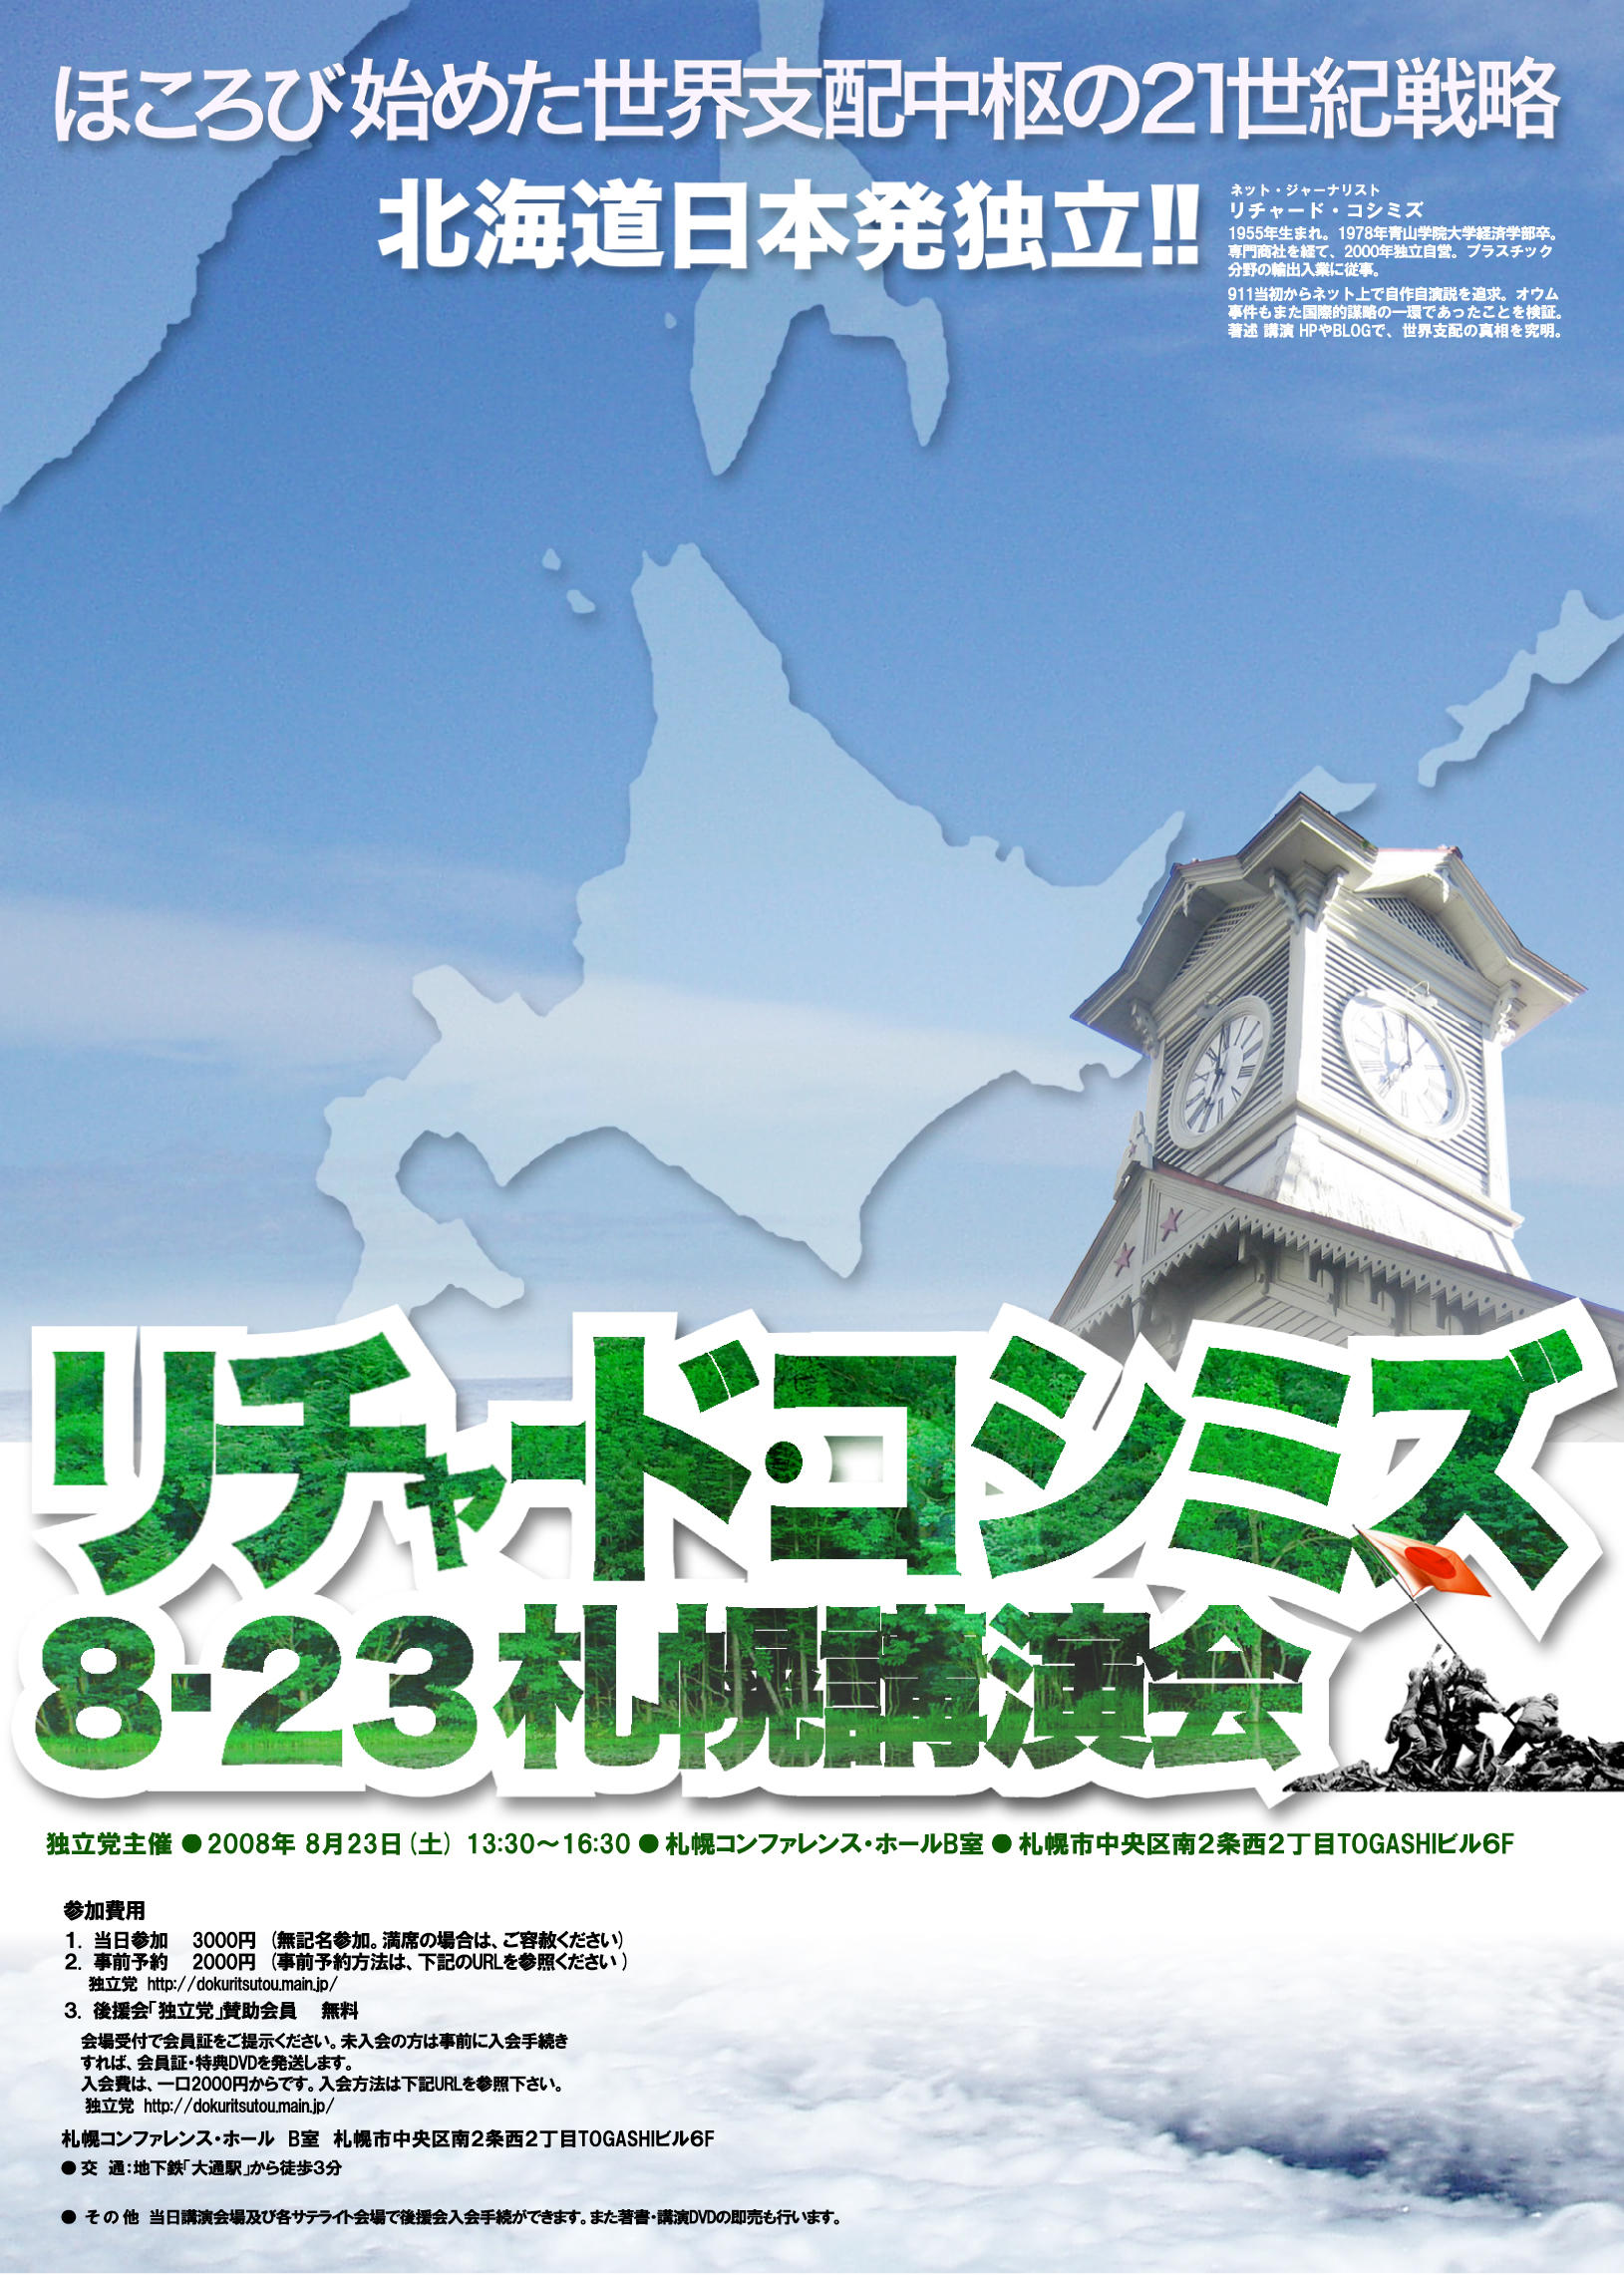 8.23札幌講演会ポスターが完成しました。